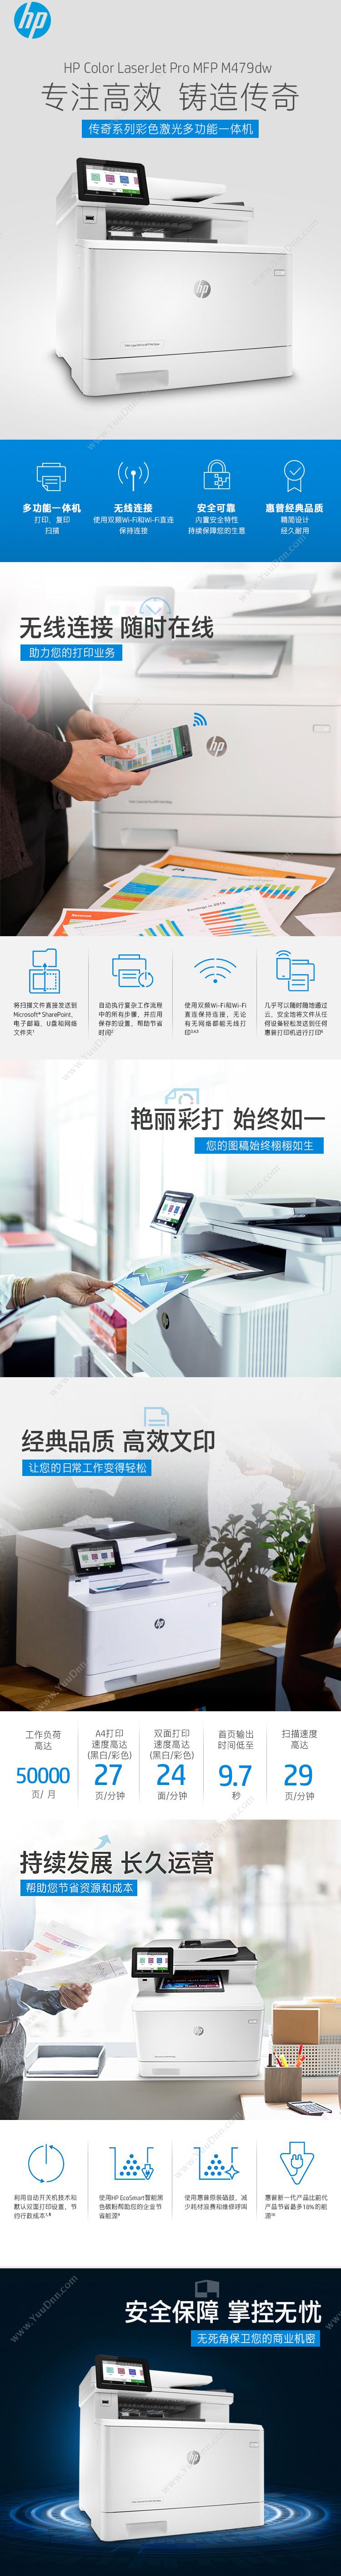 惠普 HP M479dw 专业级彩色激光多功能一体打印机 打复印机